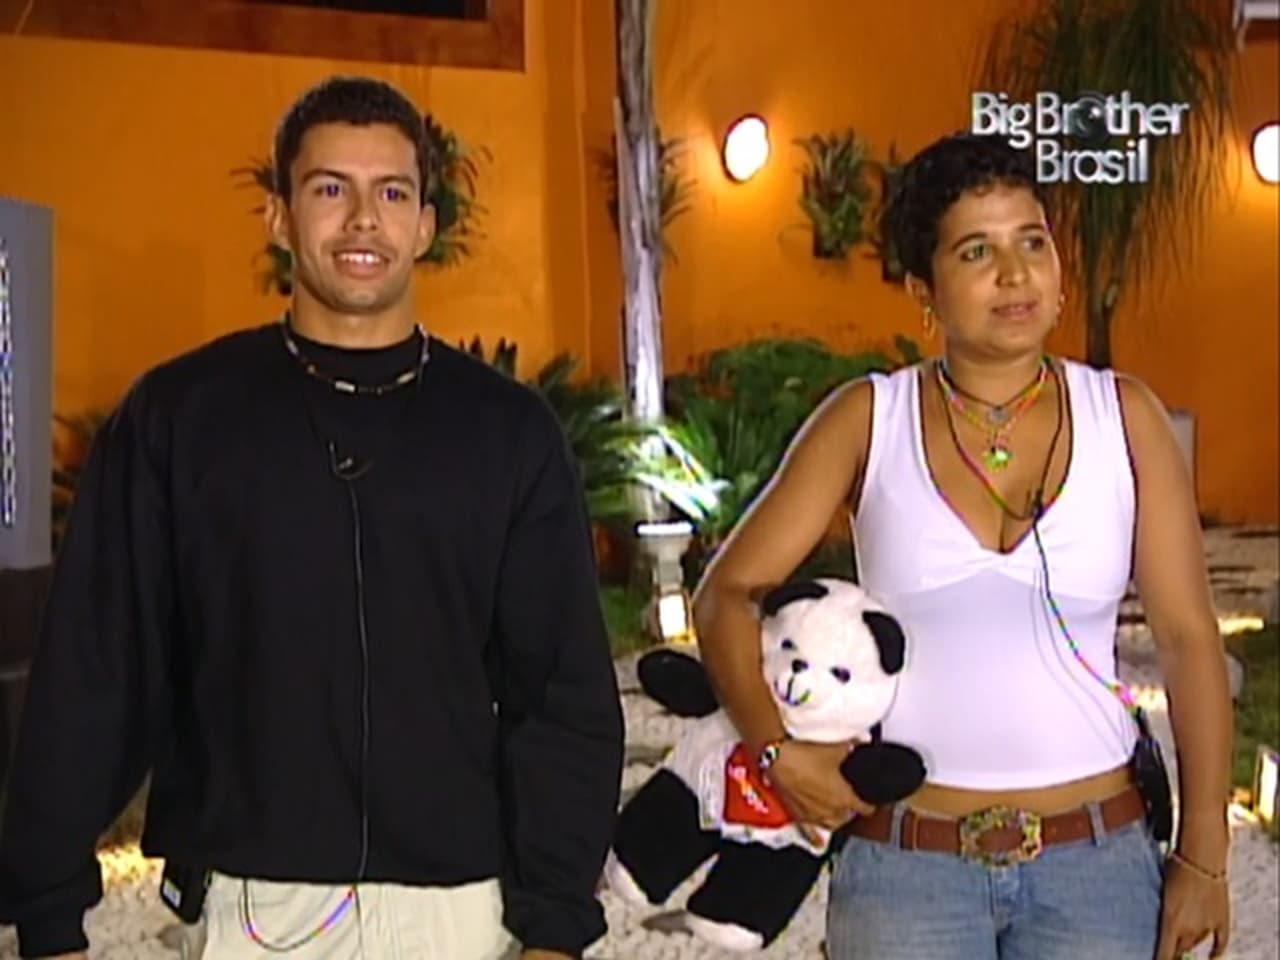 Big Brother Brasil - Season 4 Episode 3 : Episode 3